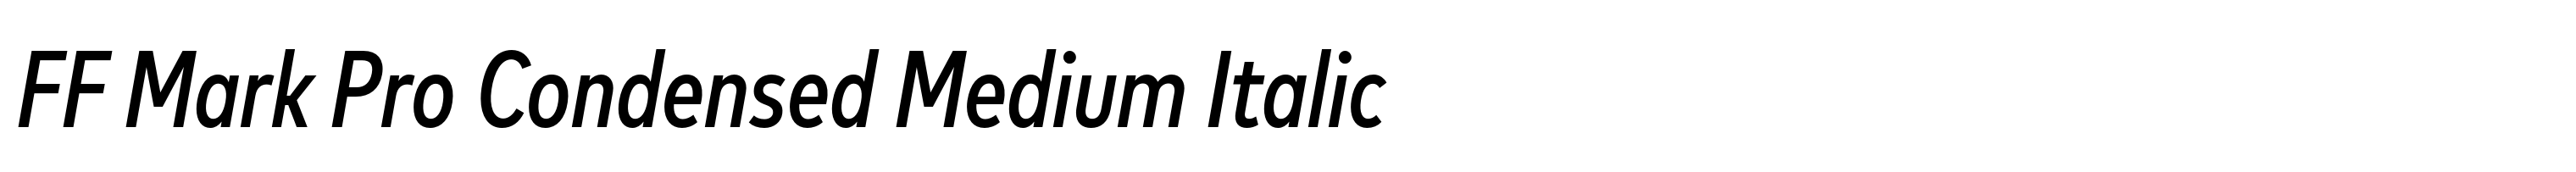 FF Mark Pro Condensed Medium Italic